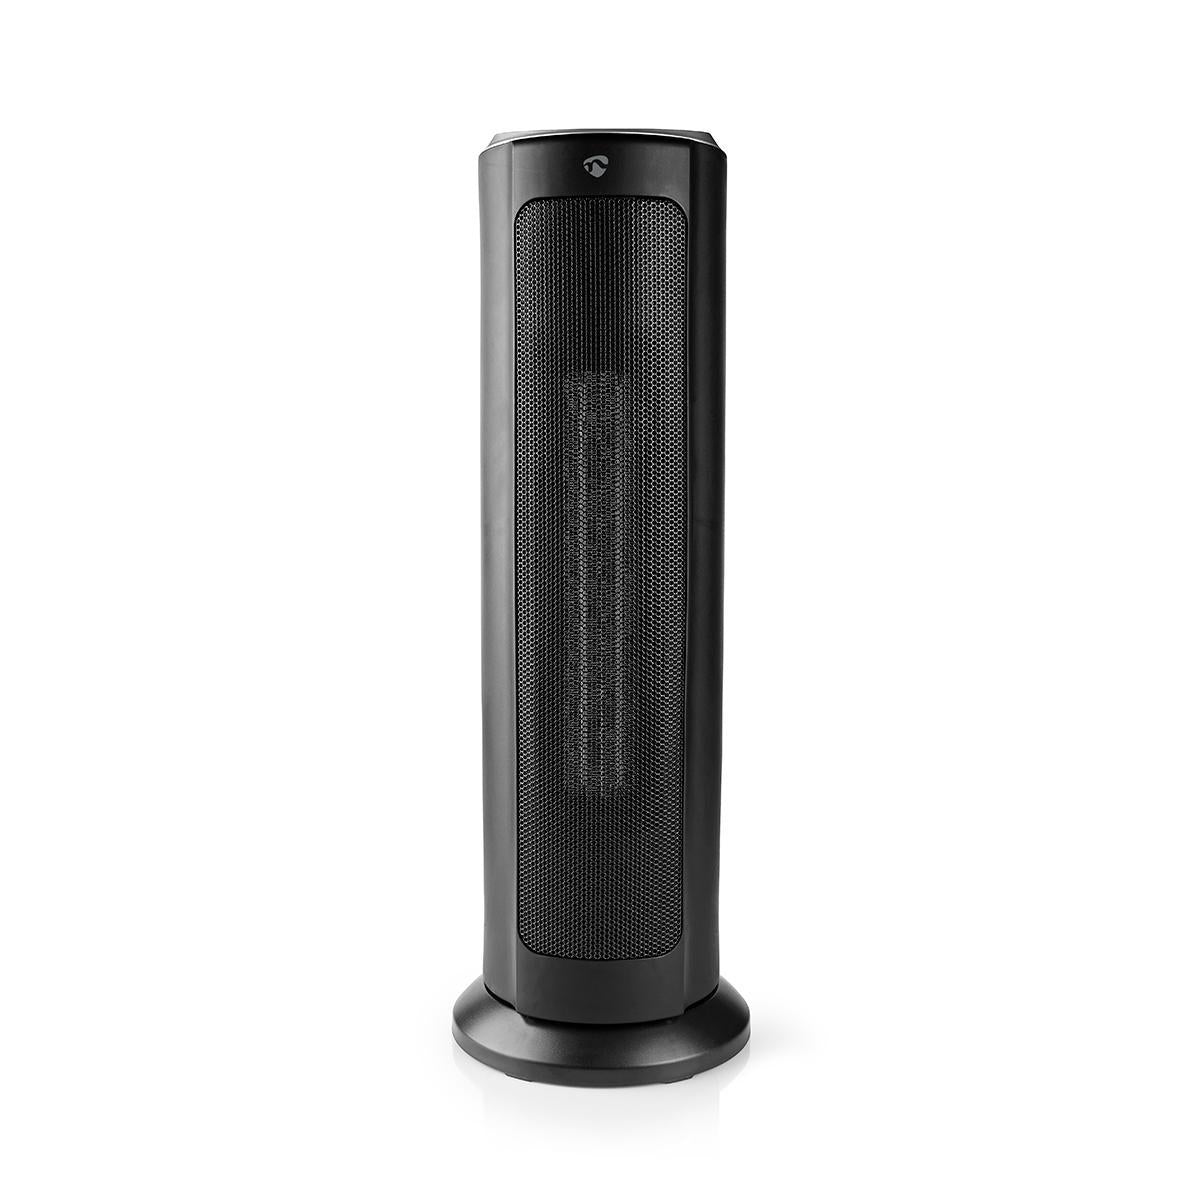 Nedis SmartLife Aquecedor com ventilador Wifi | Torre | 2000 W | 3 Definições de calor | Oscilação 15 - 35 °C | Android™ / IOS